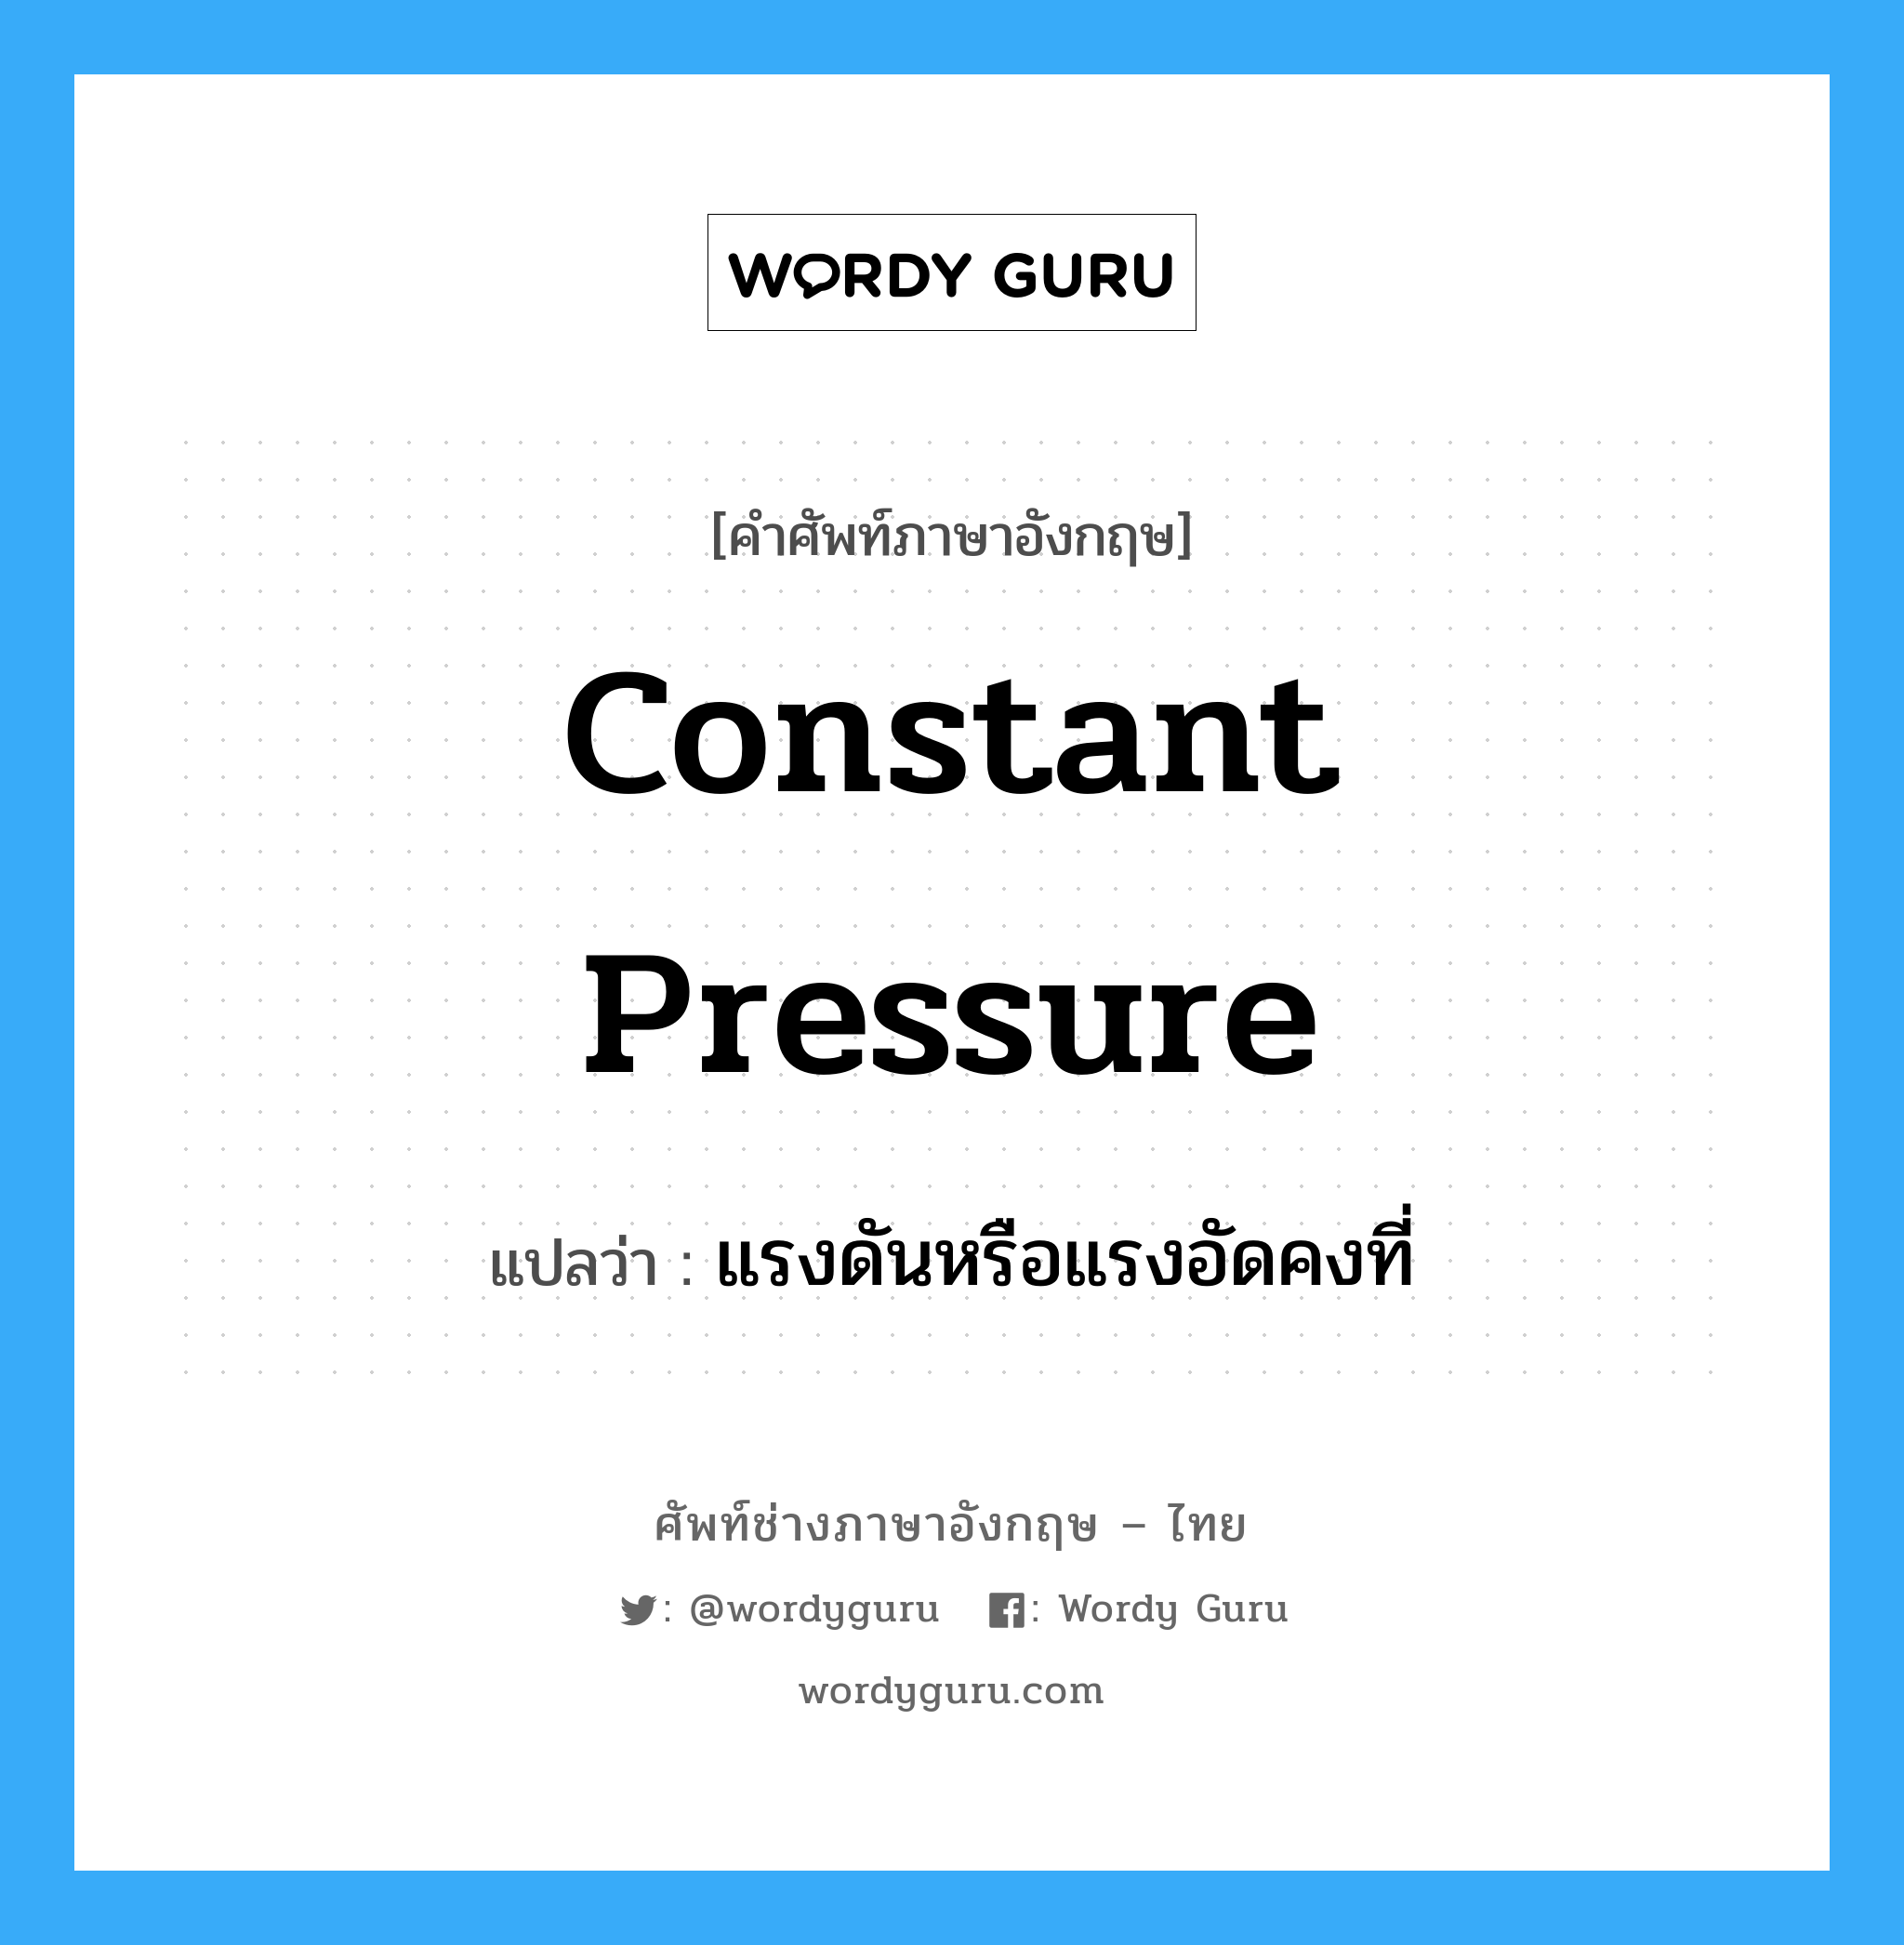 แรงดันหรือแรงอัดคงที่ ภาษาอังกฤษ?, คำศัพท์ช่างภาษาอังกฤษ - ไทย แรงดันหรือแรงอัดคงที่ คำศัพท์ภาษาอังกฤษ แรงดันหรือแรงอัดคงที่ แปลว่า constant pressure